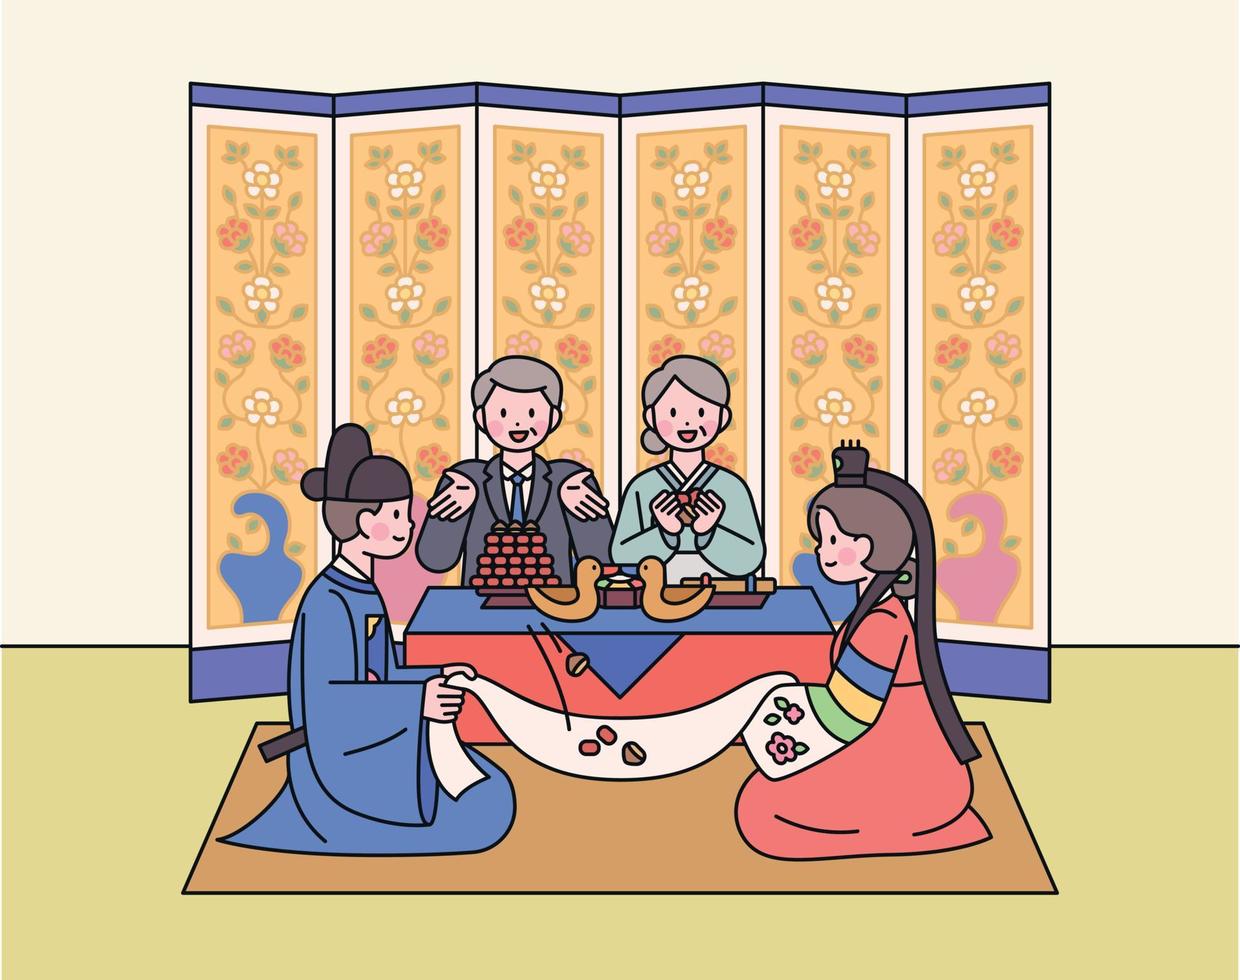 de bruid en bruidegom Bij een traditioneel Koreaans bruiloft ontvangst. ouders zijn vieren. Daar is een vouwen scherm in de achtergrond. vector